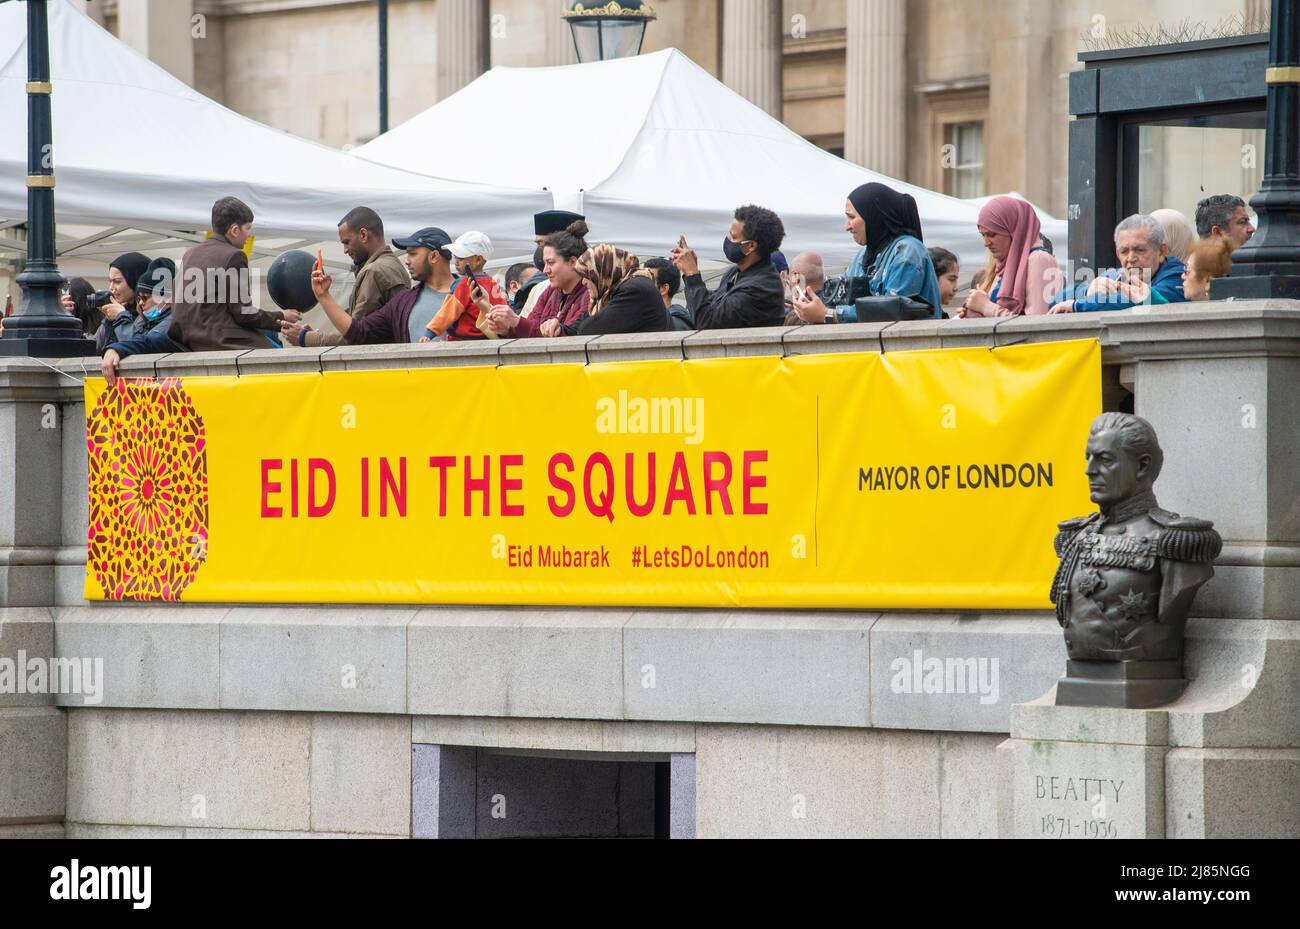 London feiert Eid auf dem Platz am Trafalgar Square. Das einzigartige kulturelle Ereignis, das das Ende des Ramadan markiert, dem islamischen heiligen Monat des Fastens. Stockfoto